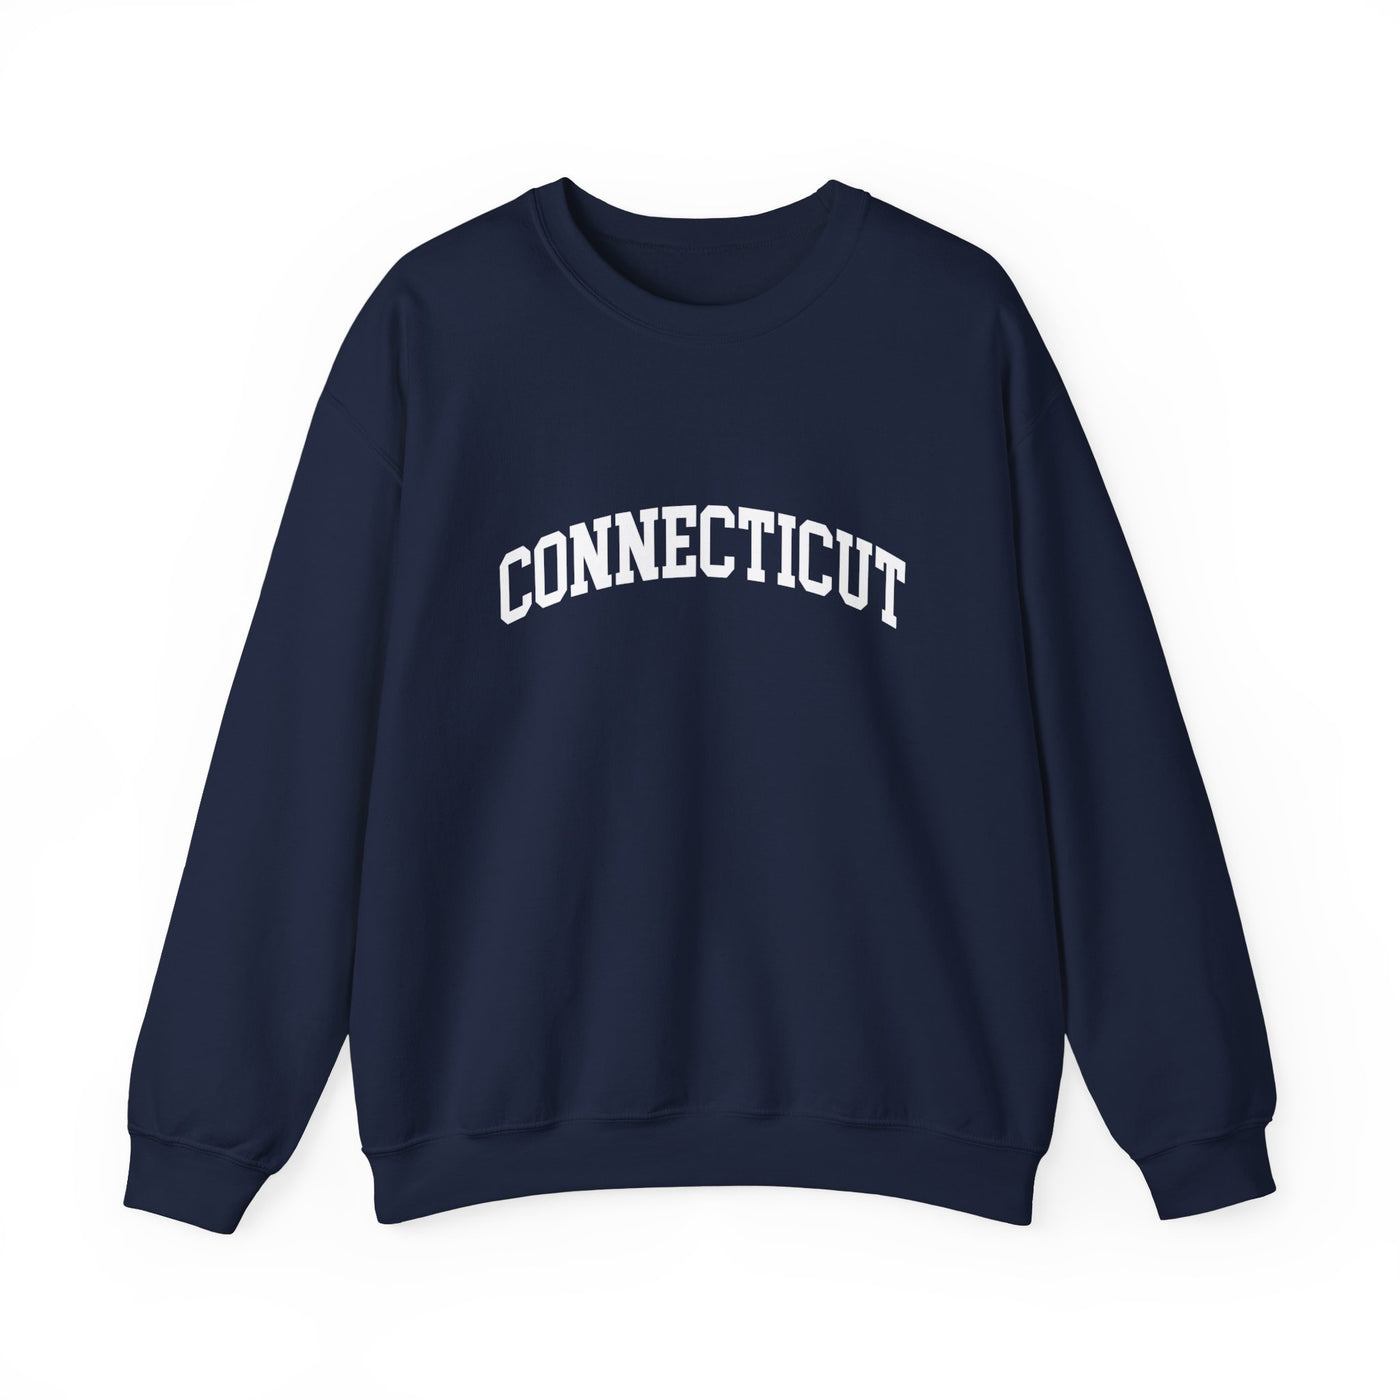 Connecticut Collegiate Crewneck Sweatshirt